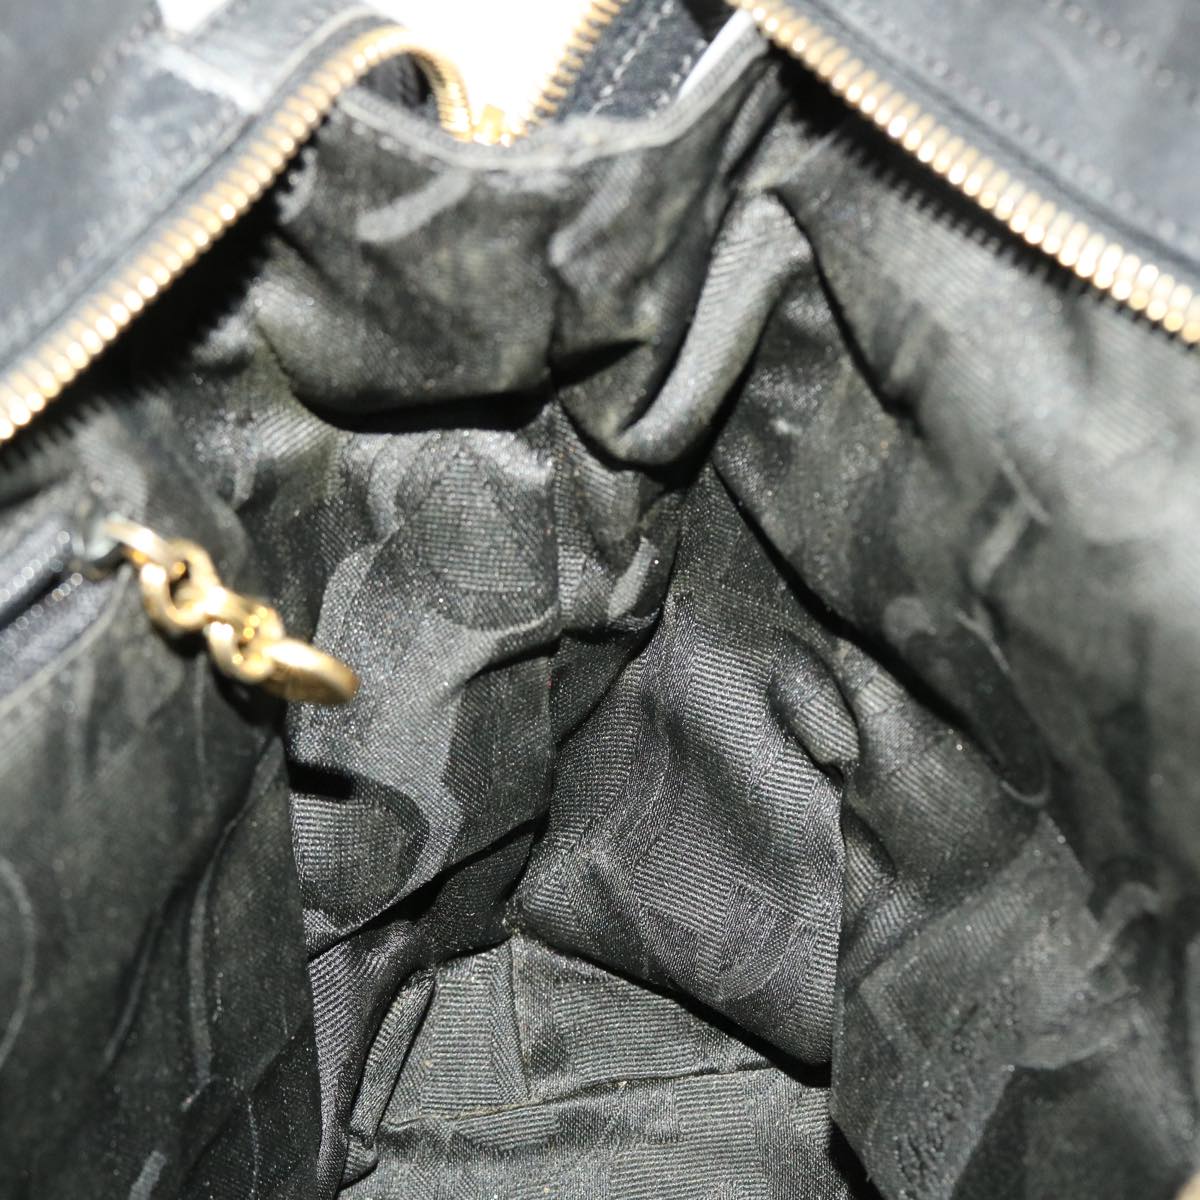 Salvatore Ferragamo Hand Bag Nylon Black AU-21-5251 Auth cl499